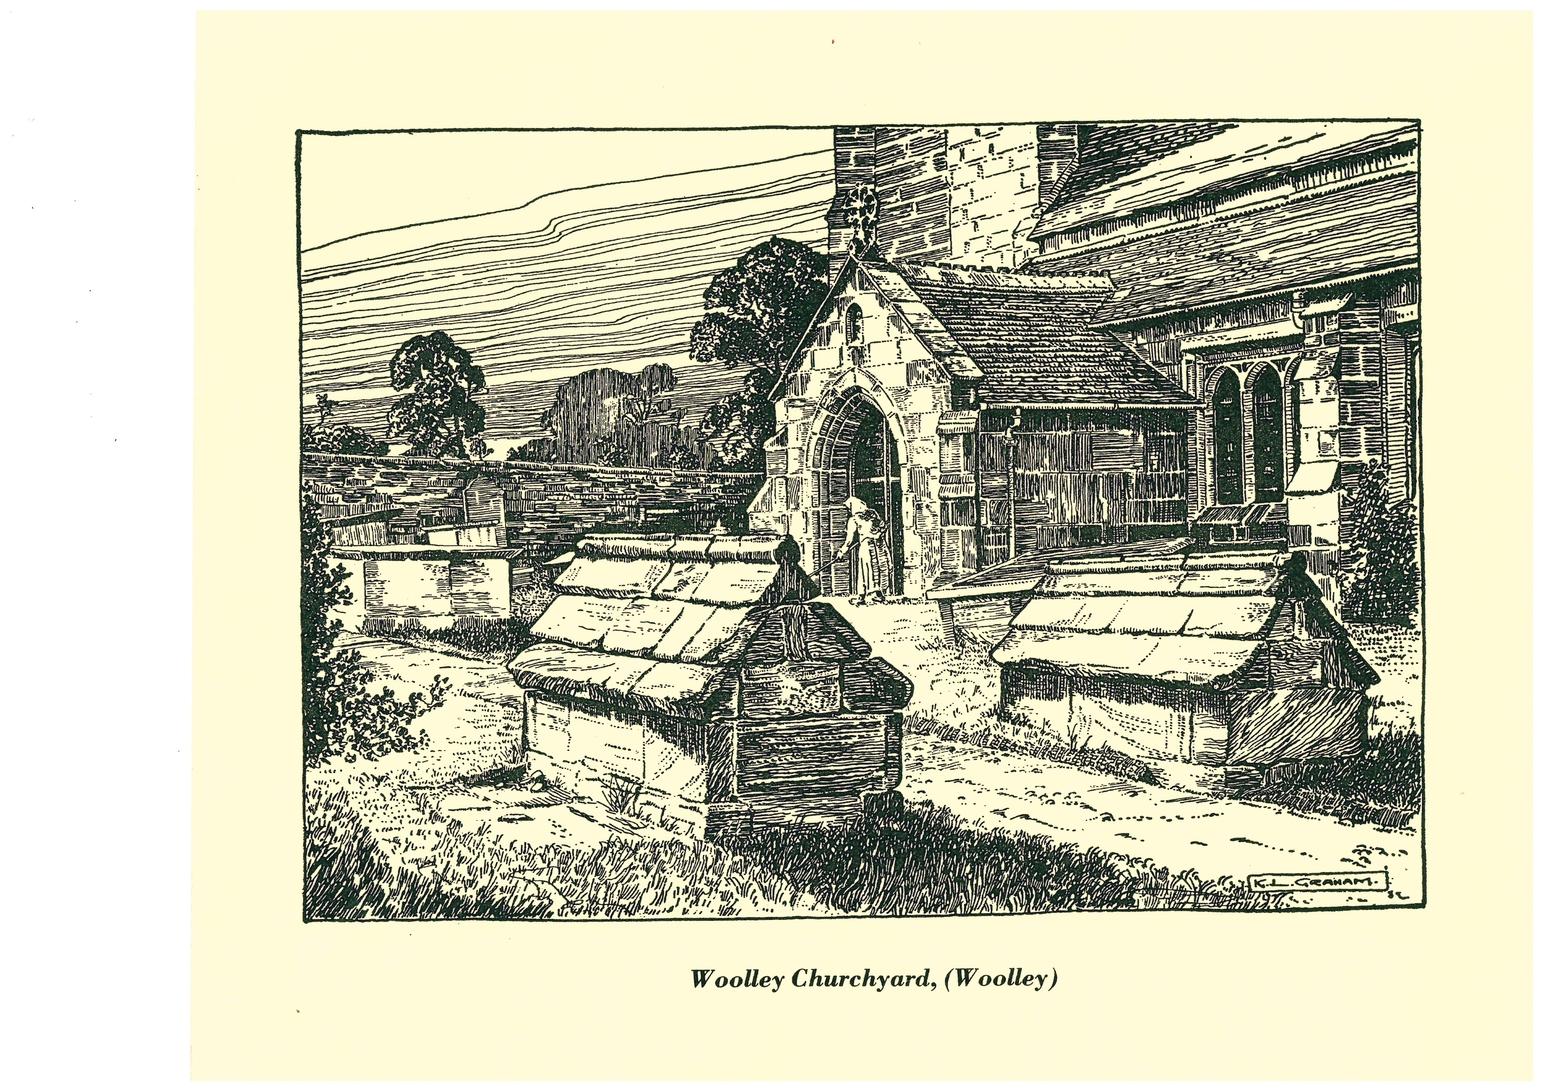 Wolley Churchyard, Woolley